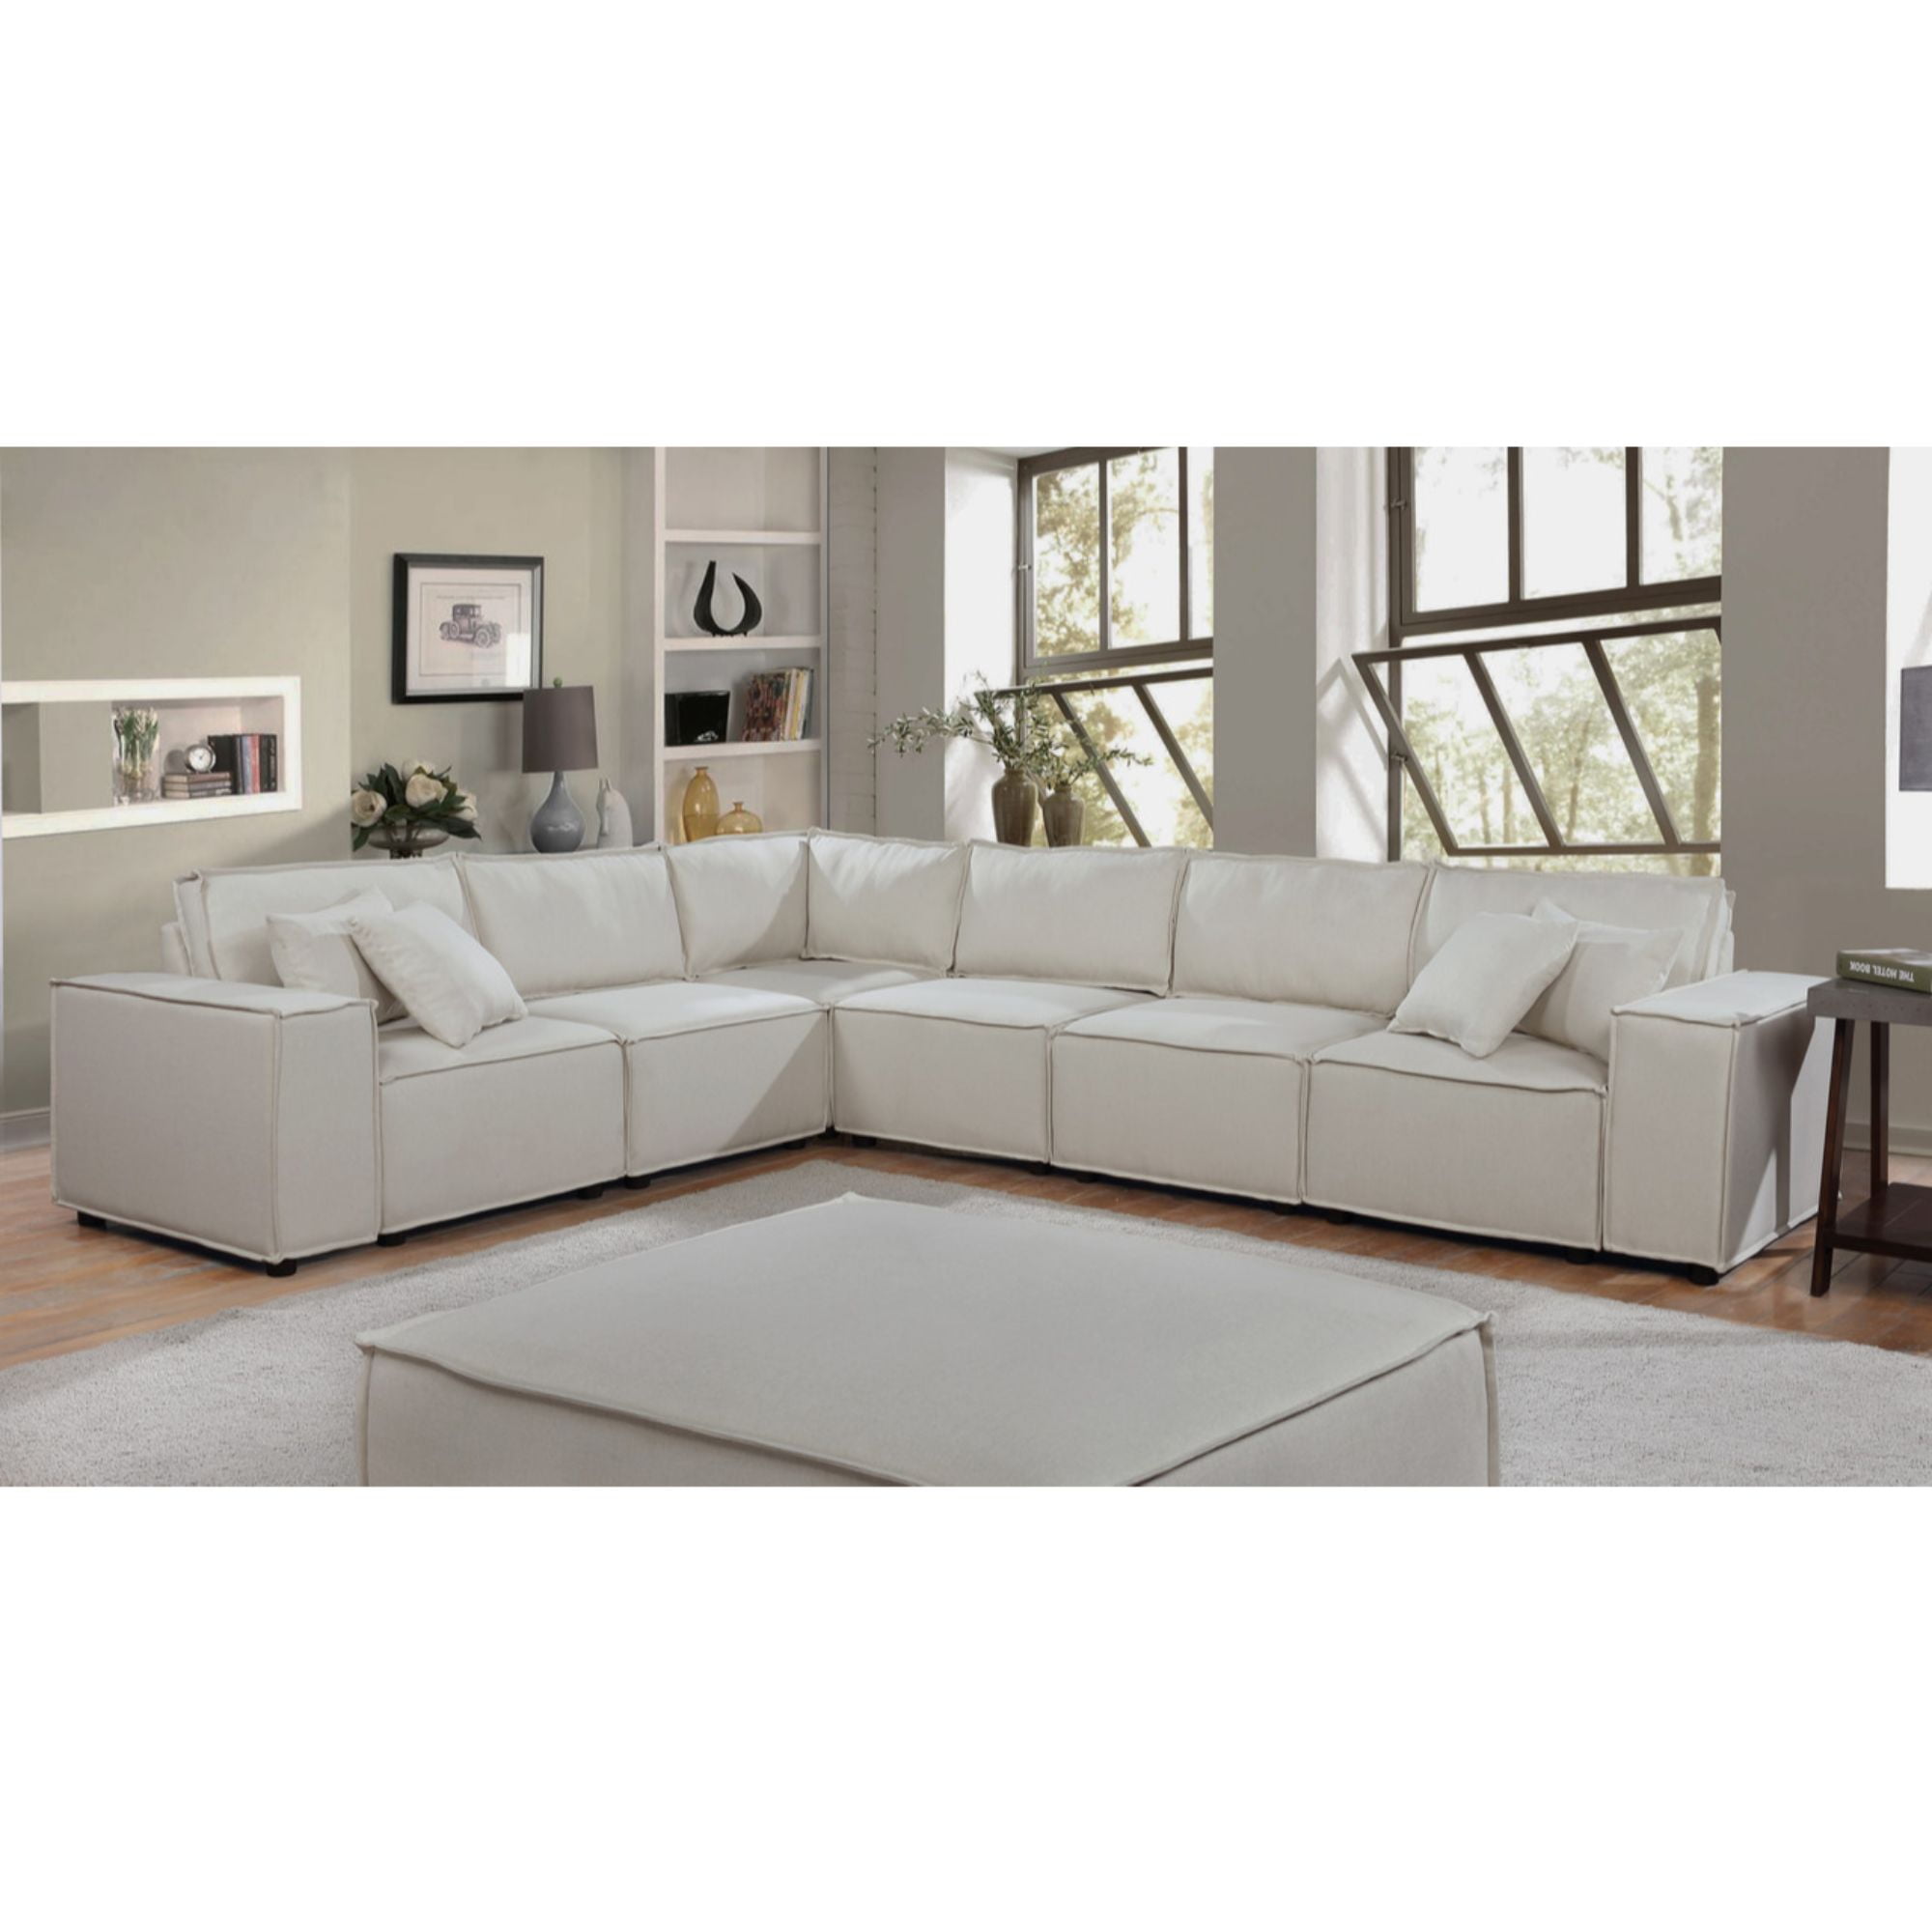 11 Cream Beige Linen Modular Sectional, Cream Sectional Sofa Modern